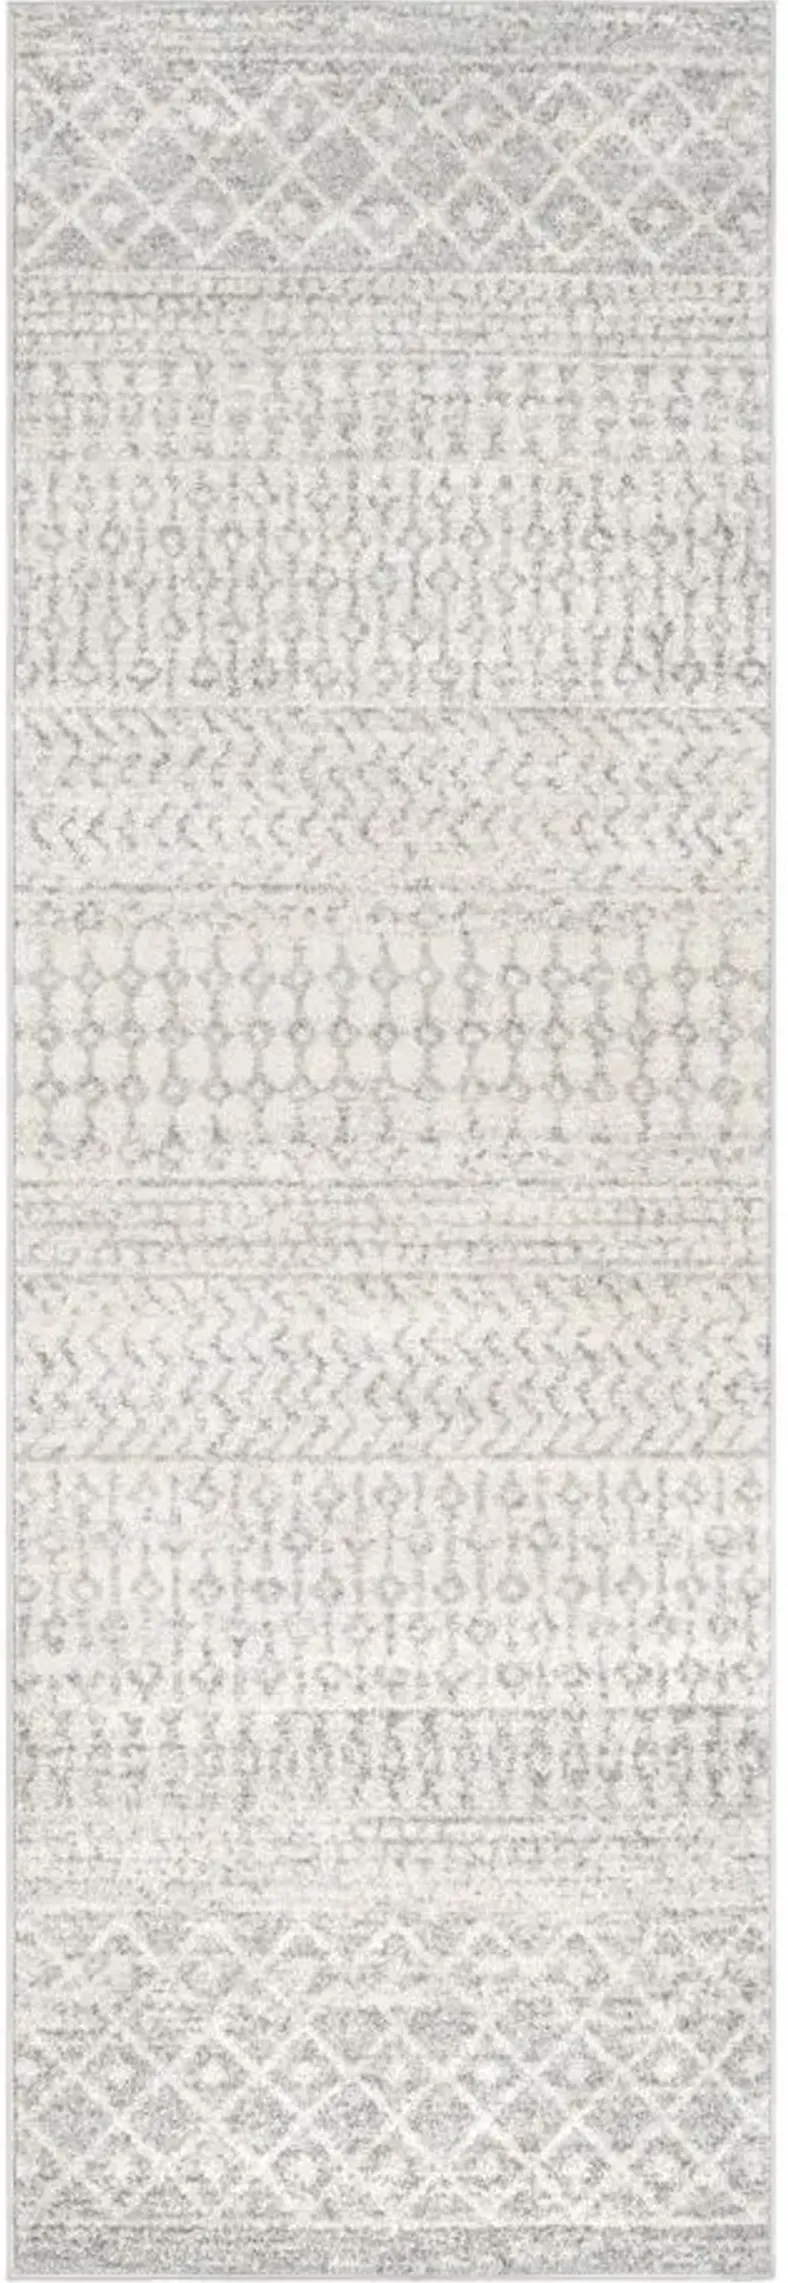 Elaziz Runner Rug in Light Gray, Medium Gray, White by Surya